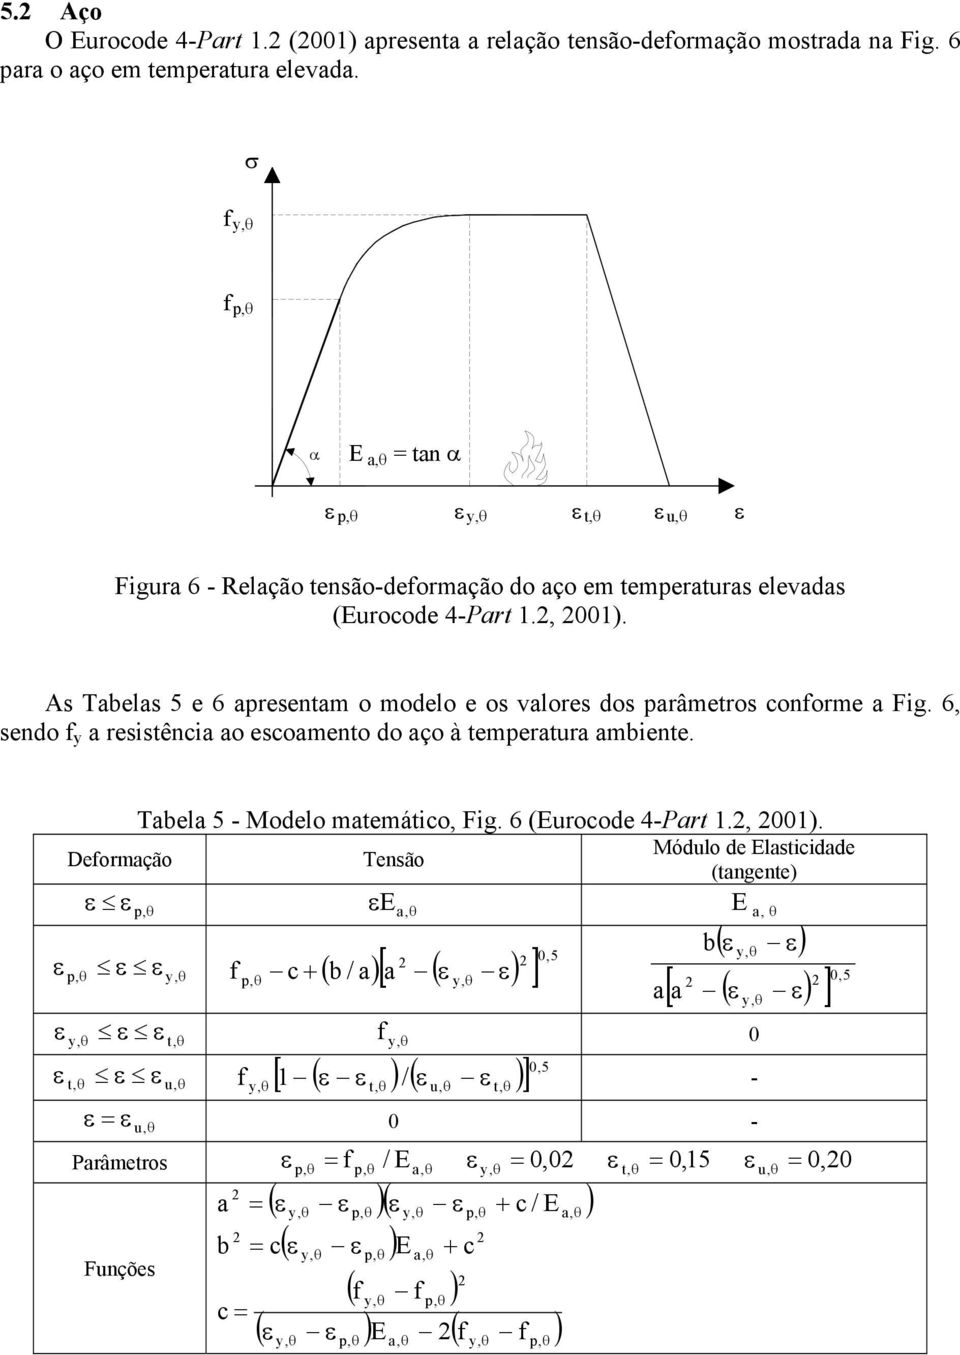 As abelas 5 e 6 apresentam o modelo e os valores dos parâmetros conforme a Fig. 6, sendo f y a resistência ao escoamento do aço à temperatura ambiente. Deformação abela 5 - Modelo matemático, Fig.